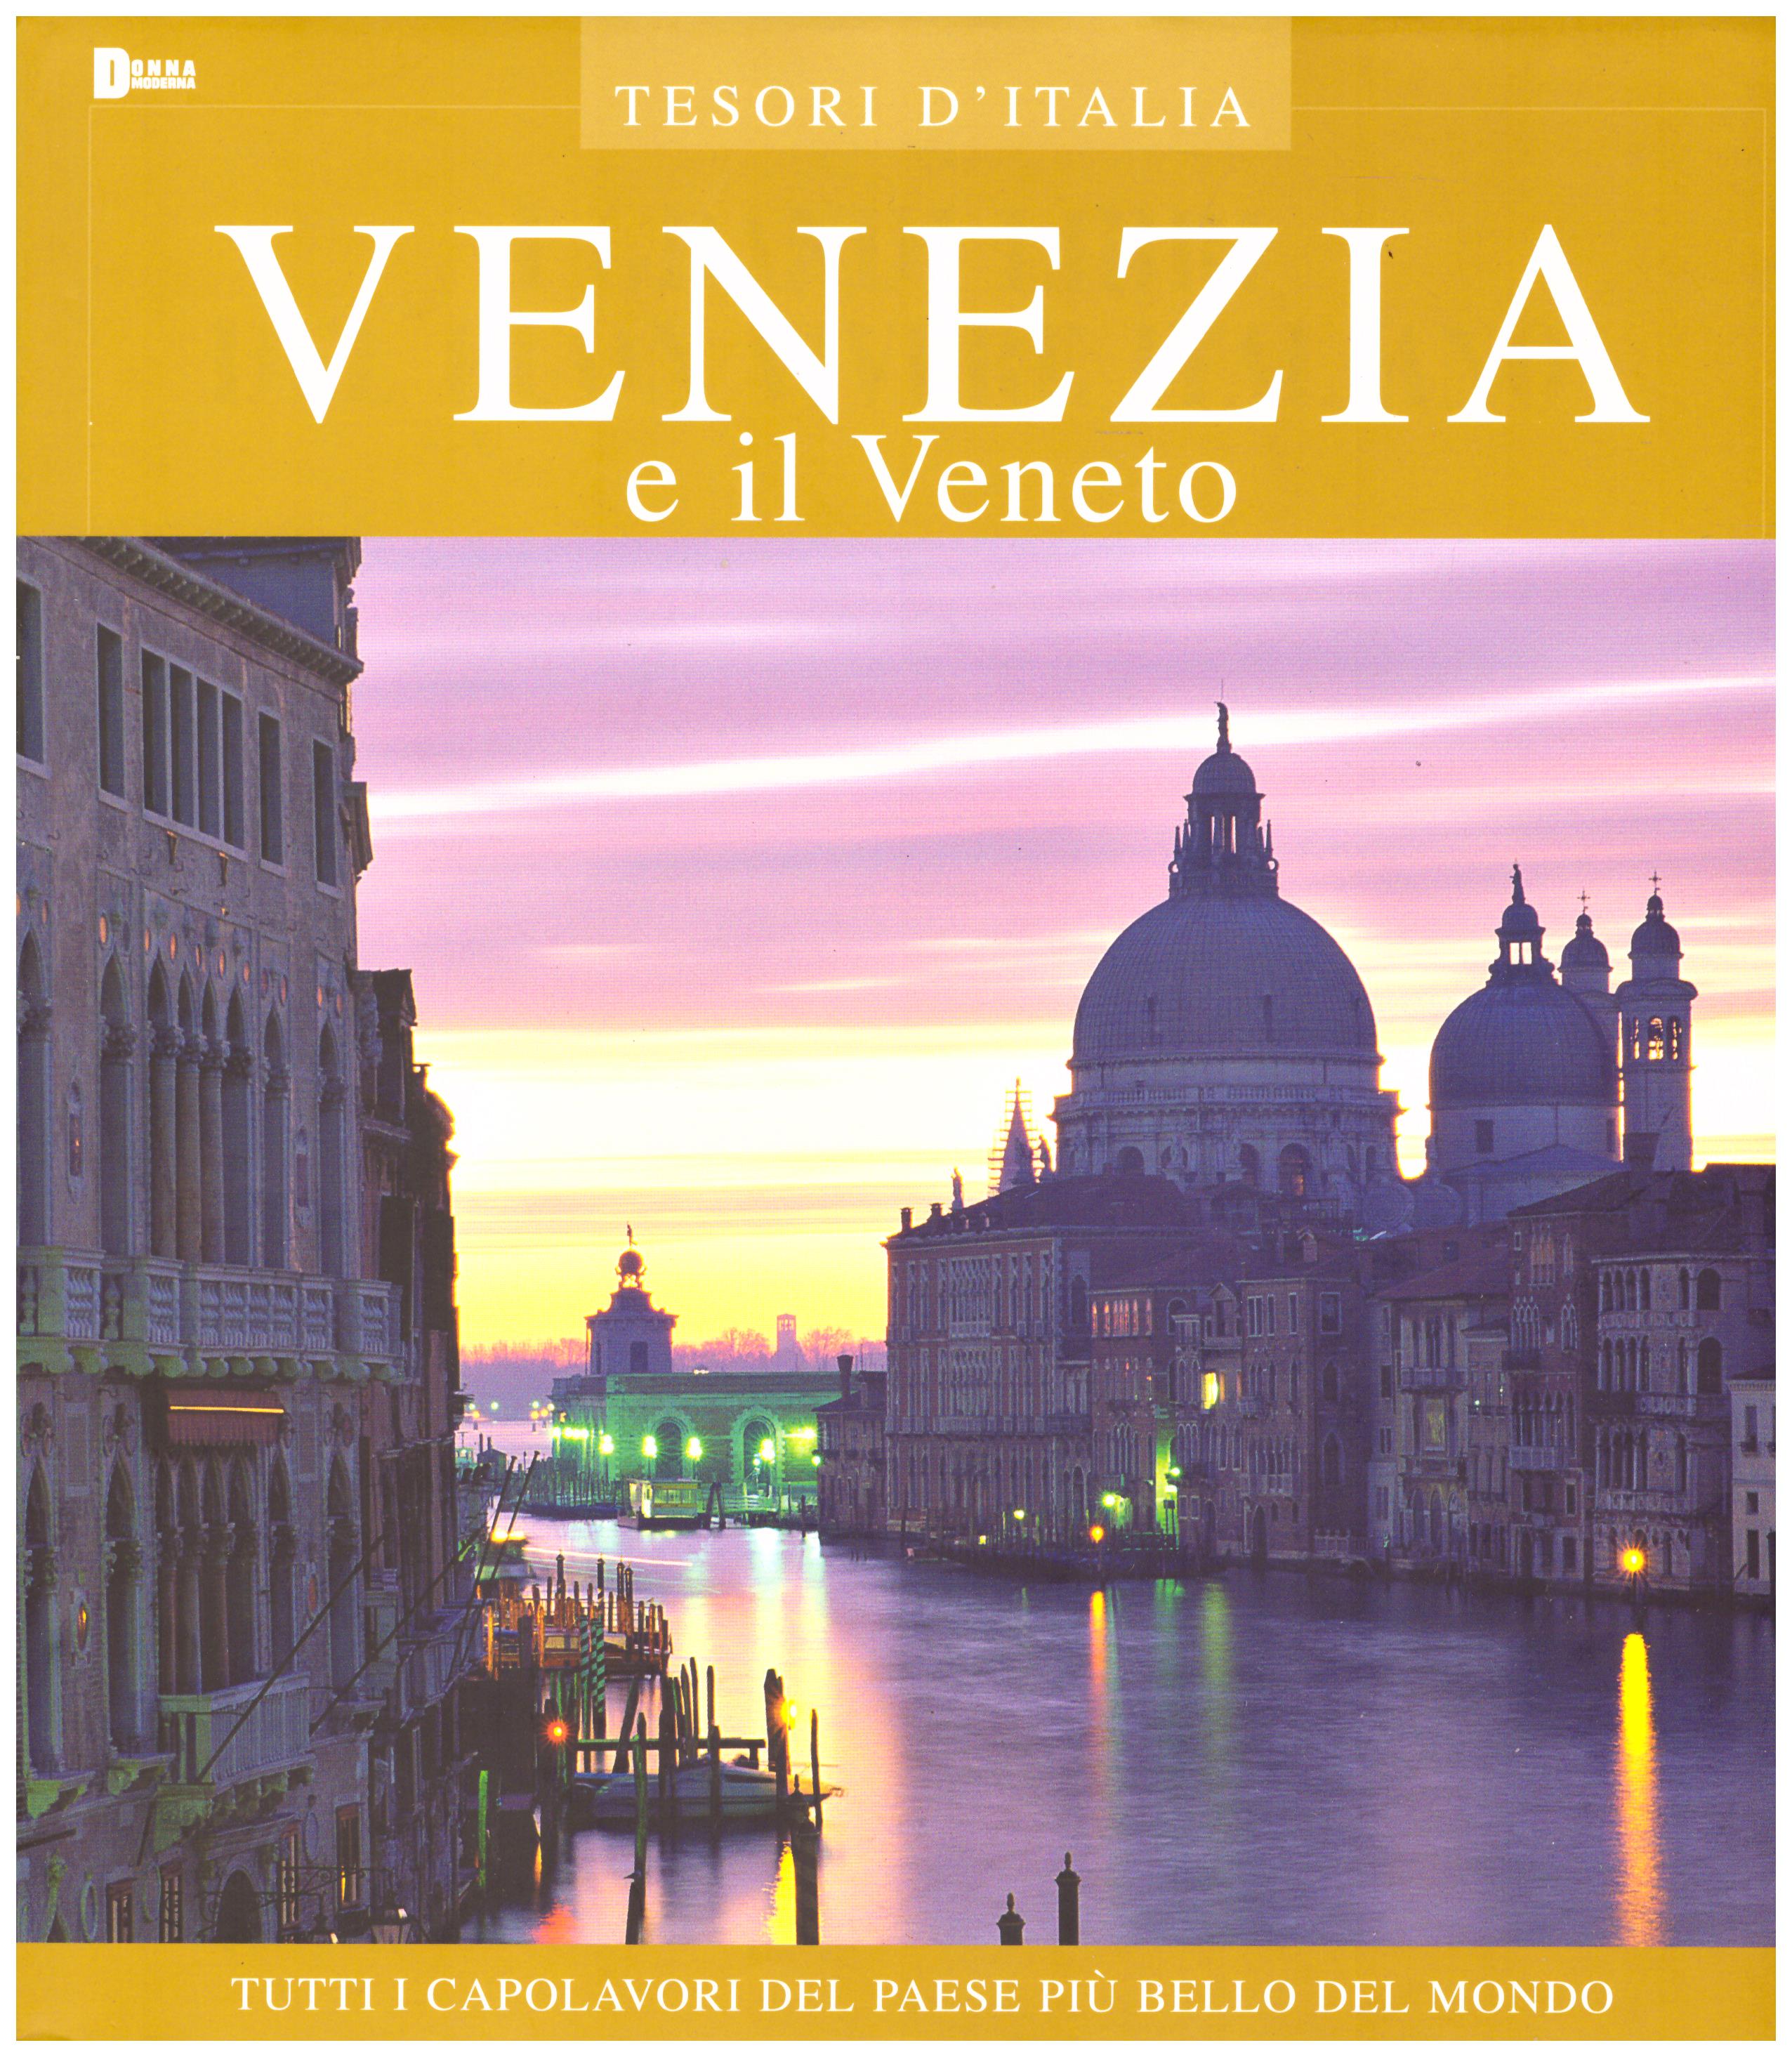 Titolo: Tesori d'Italia, Venezia e il Veneto Autore : AA.VV.   Editore: euroed 2004